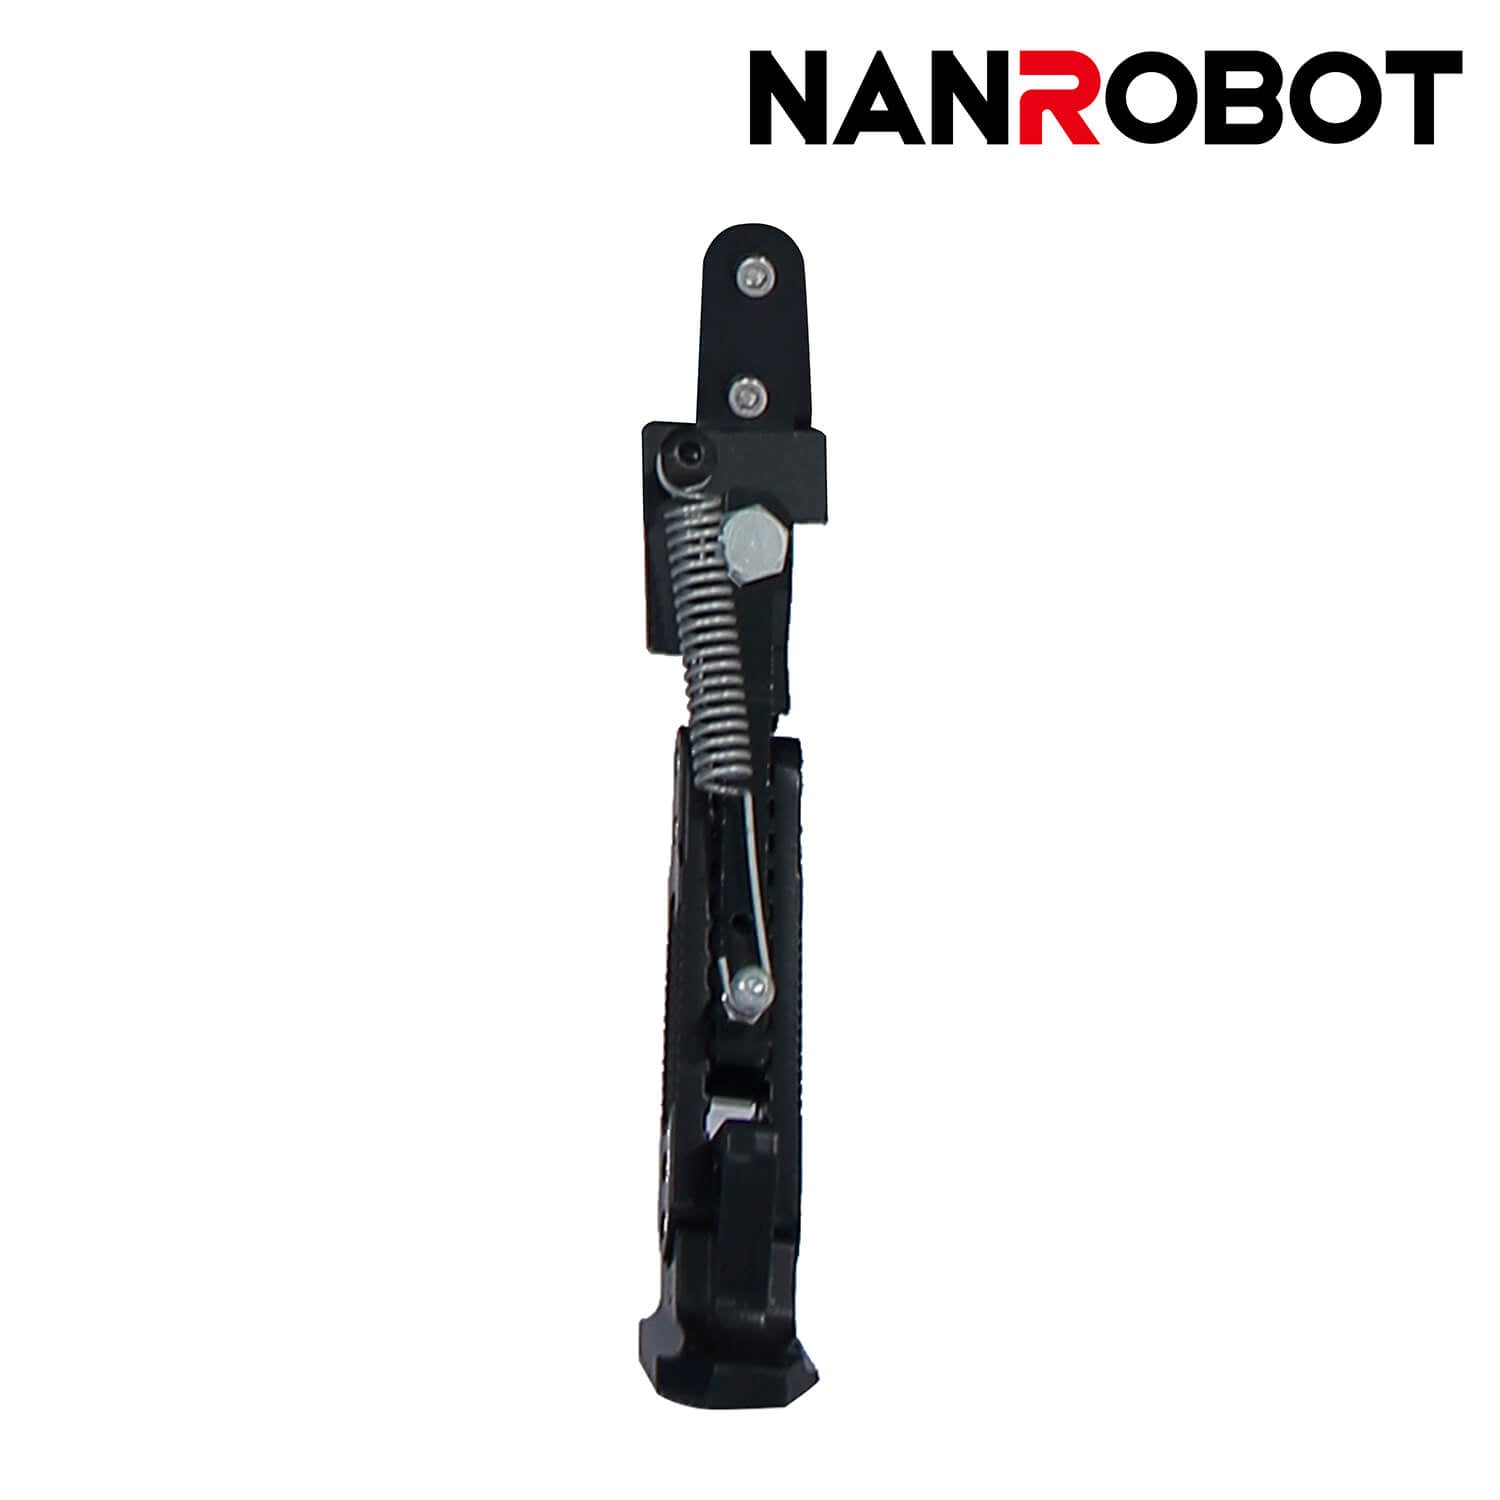 NANROBOT Electric Scooter Kickstand - NANROBOT